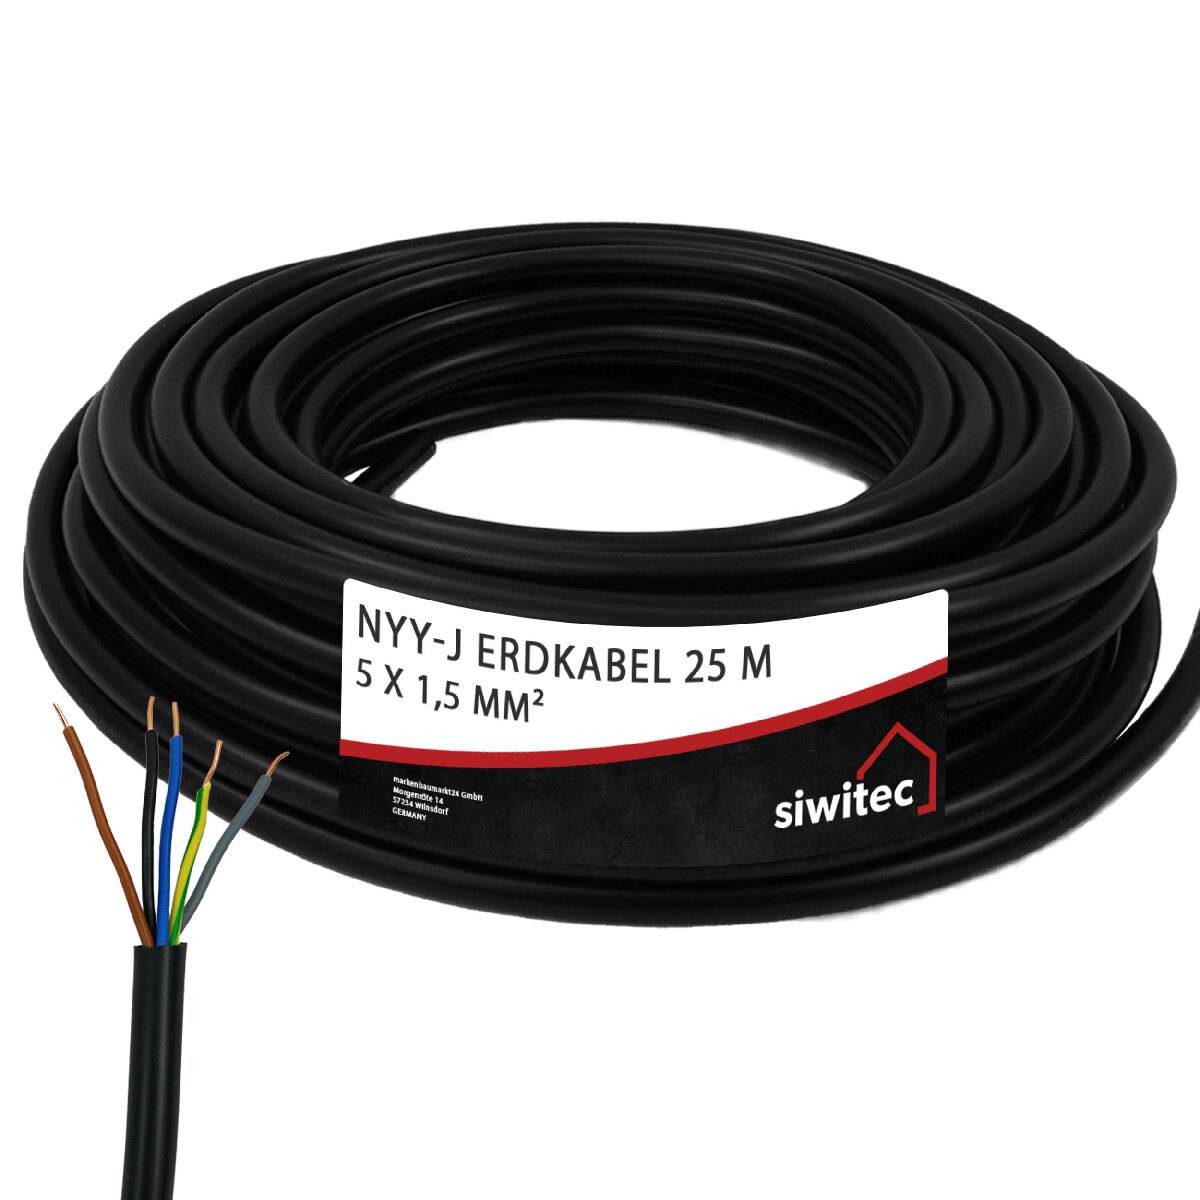 siwitec NYY-Kabel mit 5 Adern und 1,5 mm² Aderquerschnitt in 25 m Länge Erdkabel, NYY-Kabel, (2500 cm), 5-adrig, Polyvinylchlorid, Universell einsetzbar, Made in Germany